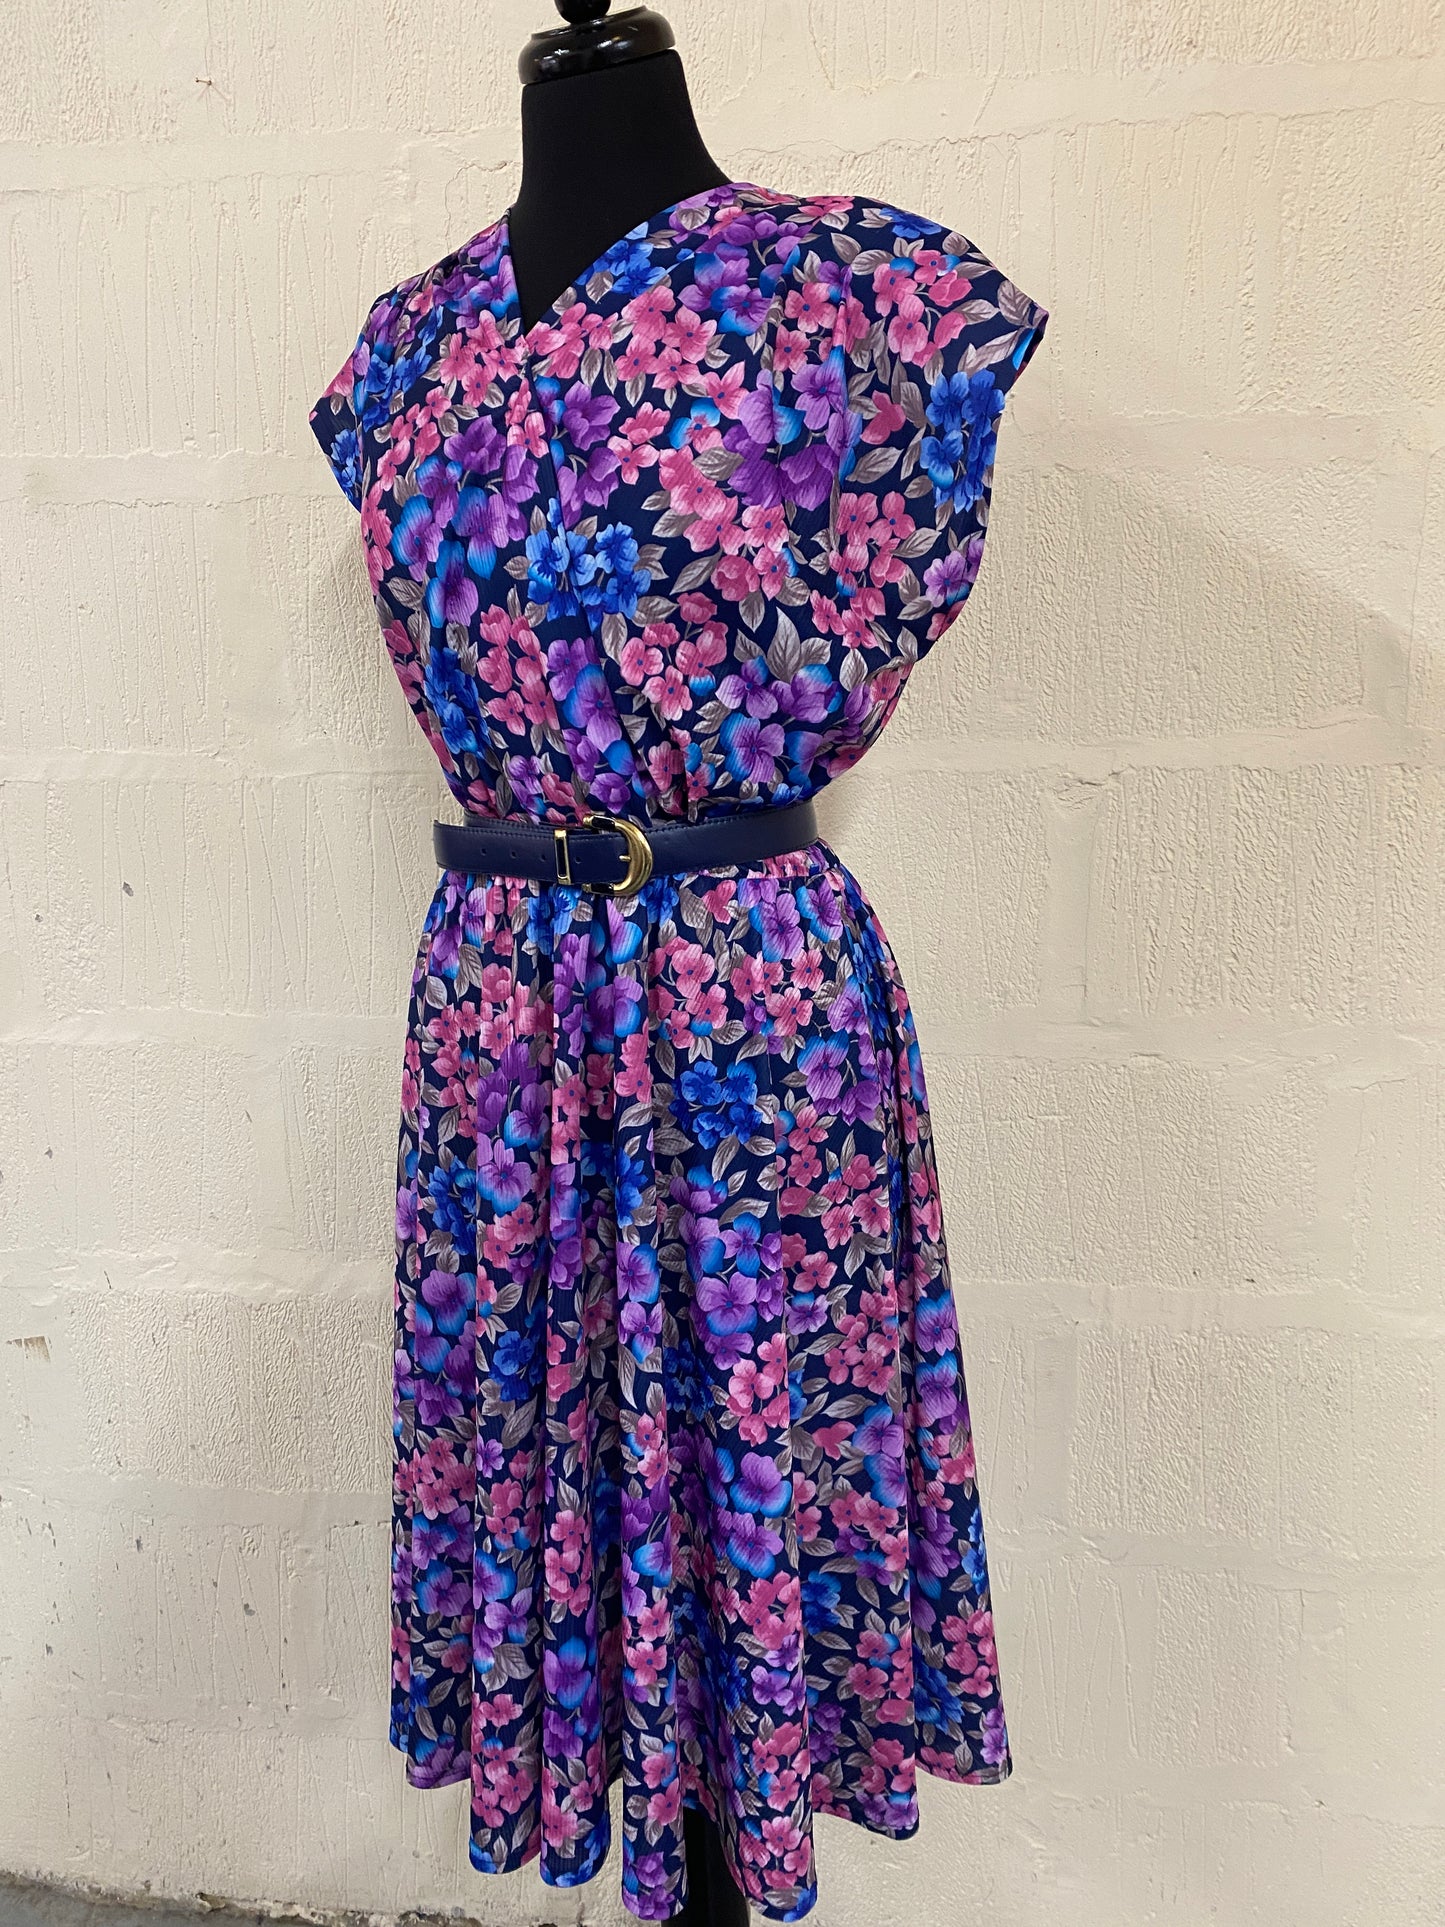 Vintage Handmade Blue & Pink Floral Dress Size 18-20